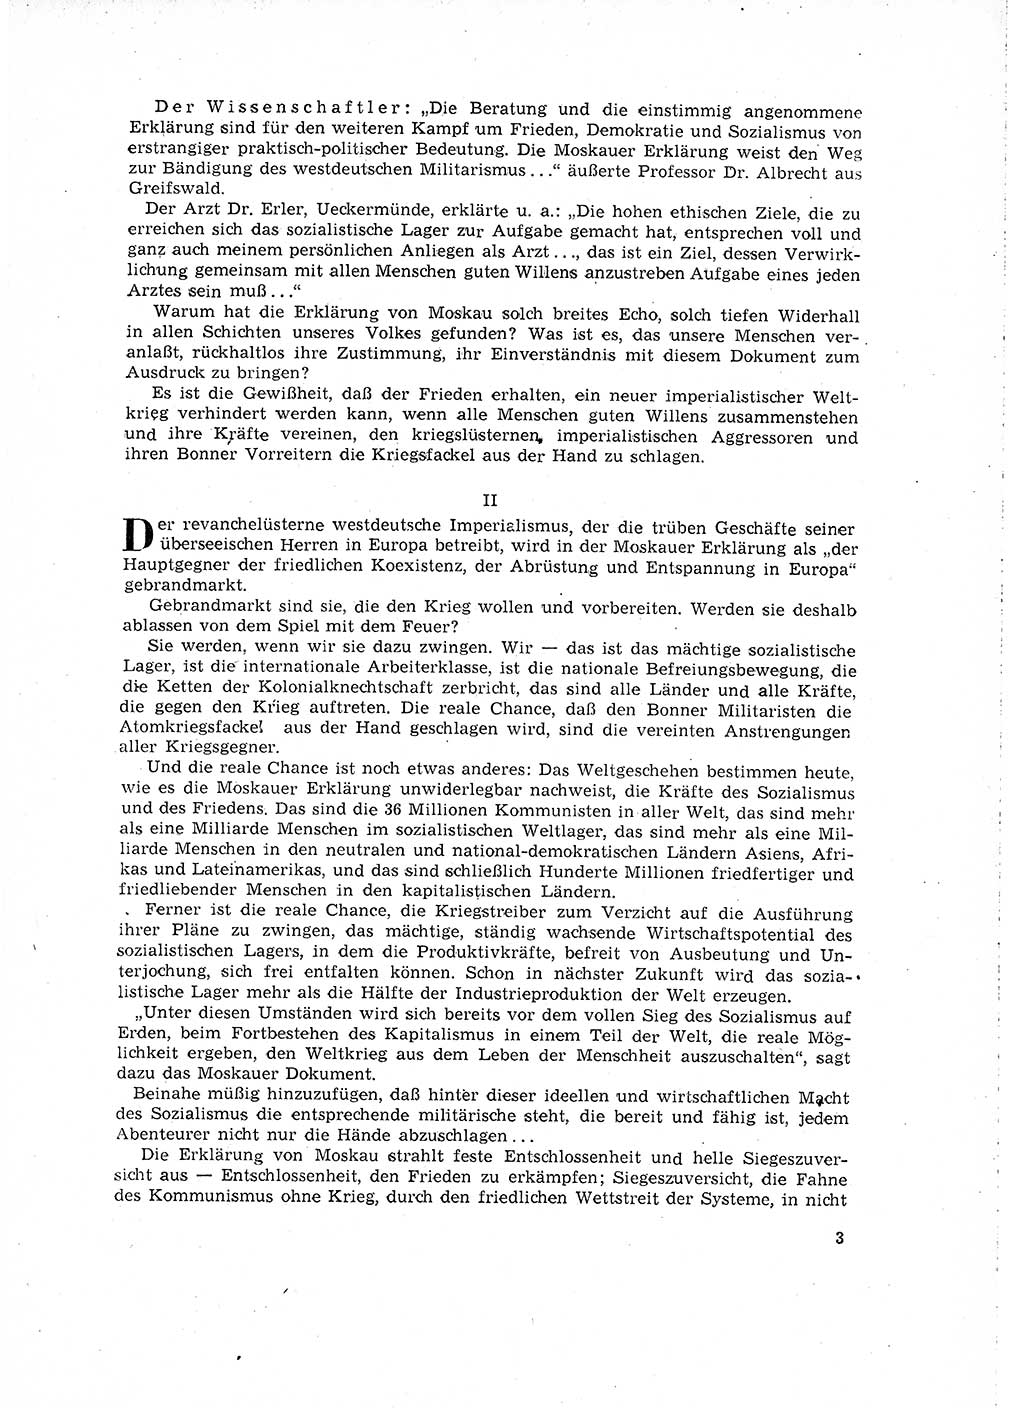 Neuer Weg (NW), Organ des Zentralkomitees (ZK) der SED (Sozialistische Einheitspartei Deutschlands) für Fragen des Parteilebens, 16. Jahrgang [Deutsche Demokratische Republik (DDR)] 1961, Seite 3 (NW ZK SED DDR 1961, S. 3)